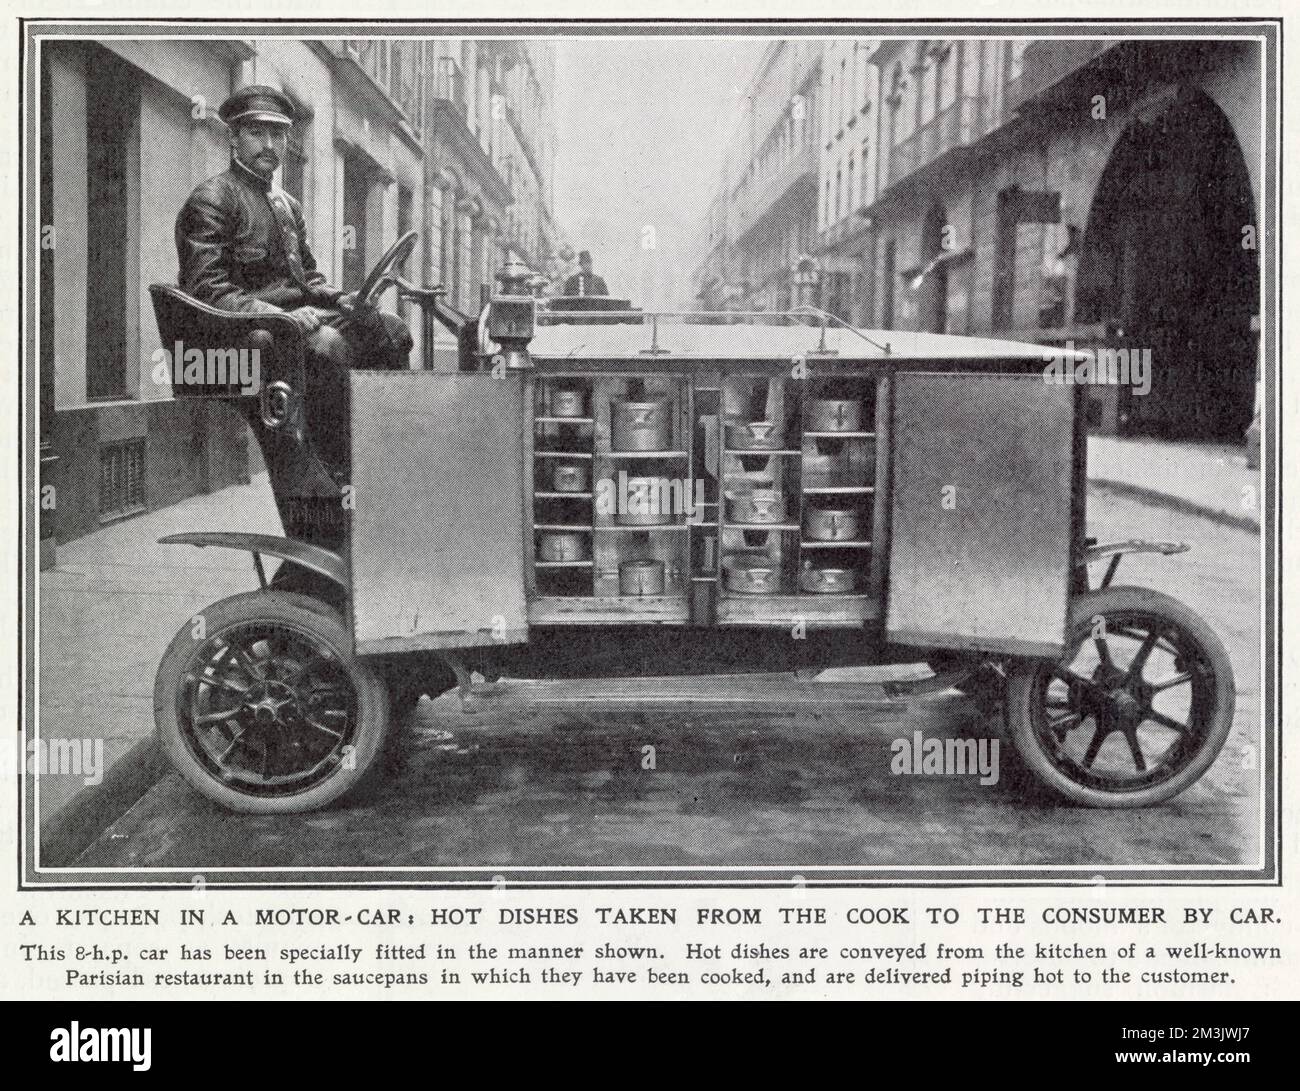 Ein Auto mit acht Pferden, mit dem heiße Speisen aus einem bekannten Pariser Restaurant an Menschen in ihren Häusern transportiert wurden. Datum: 1909 Stockfoto